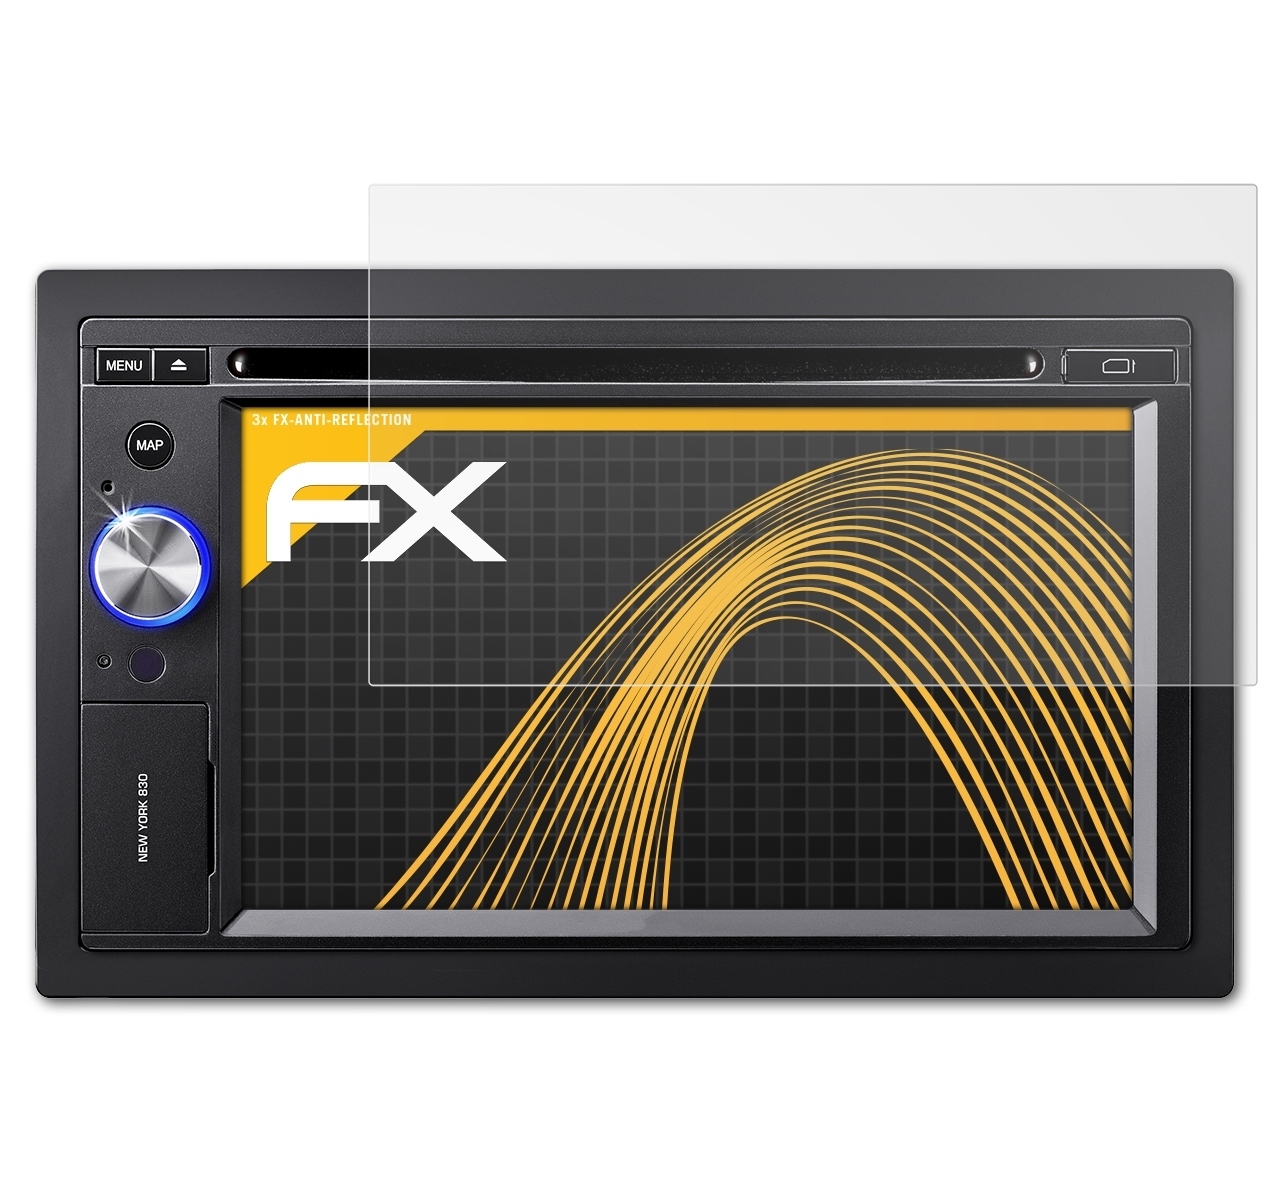 ATFOLIX 3x FX-Antireflex Displayschutz(für Blaupunkt 830 / York New 835)